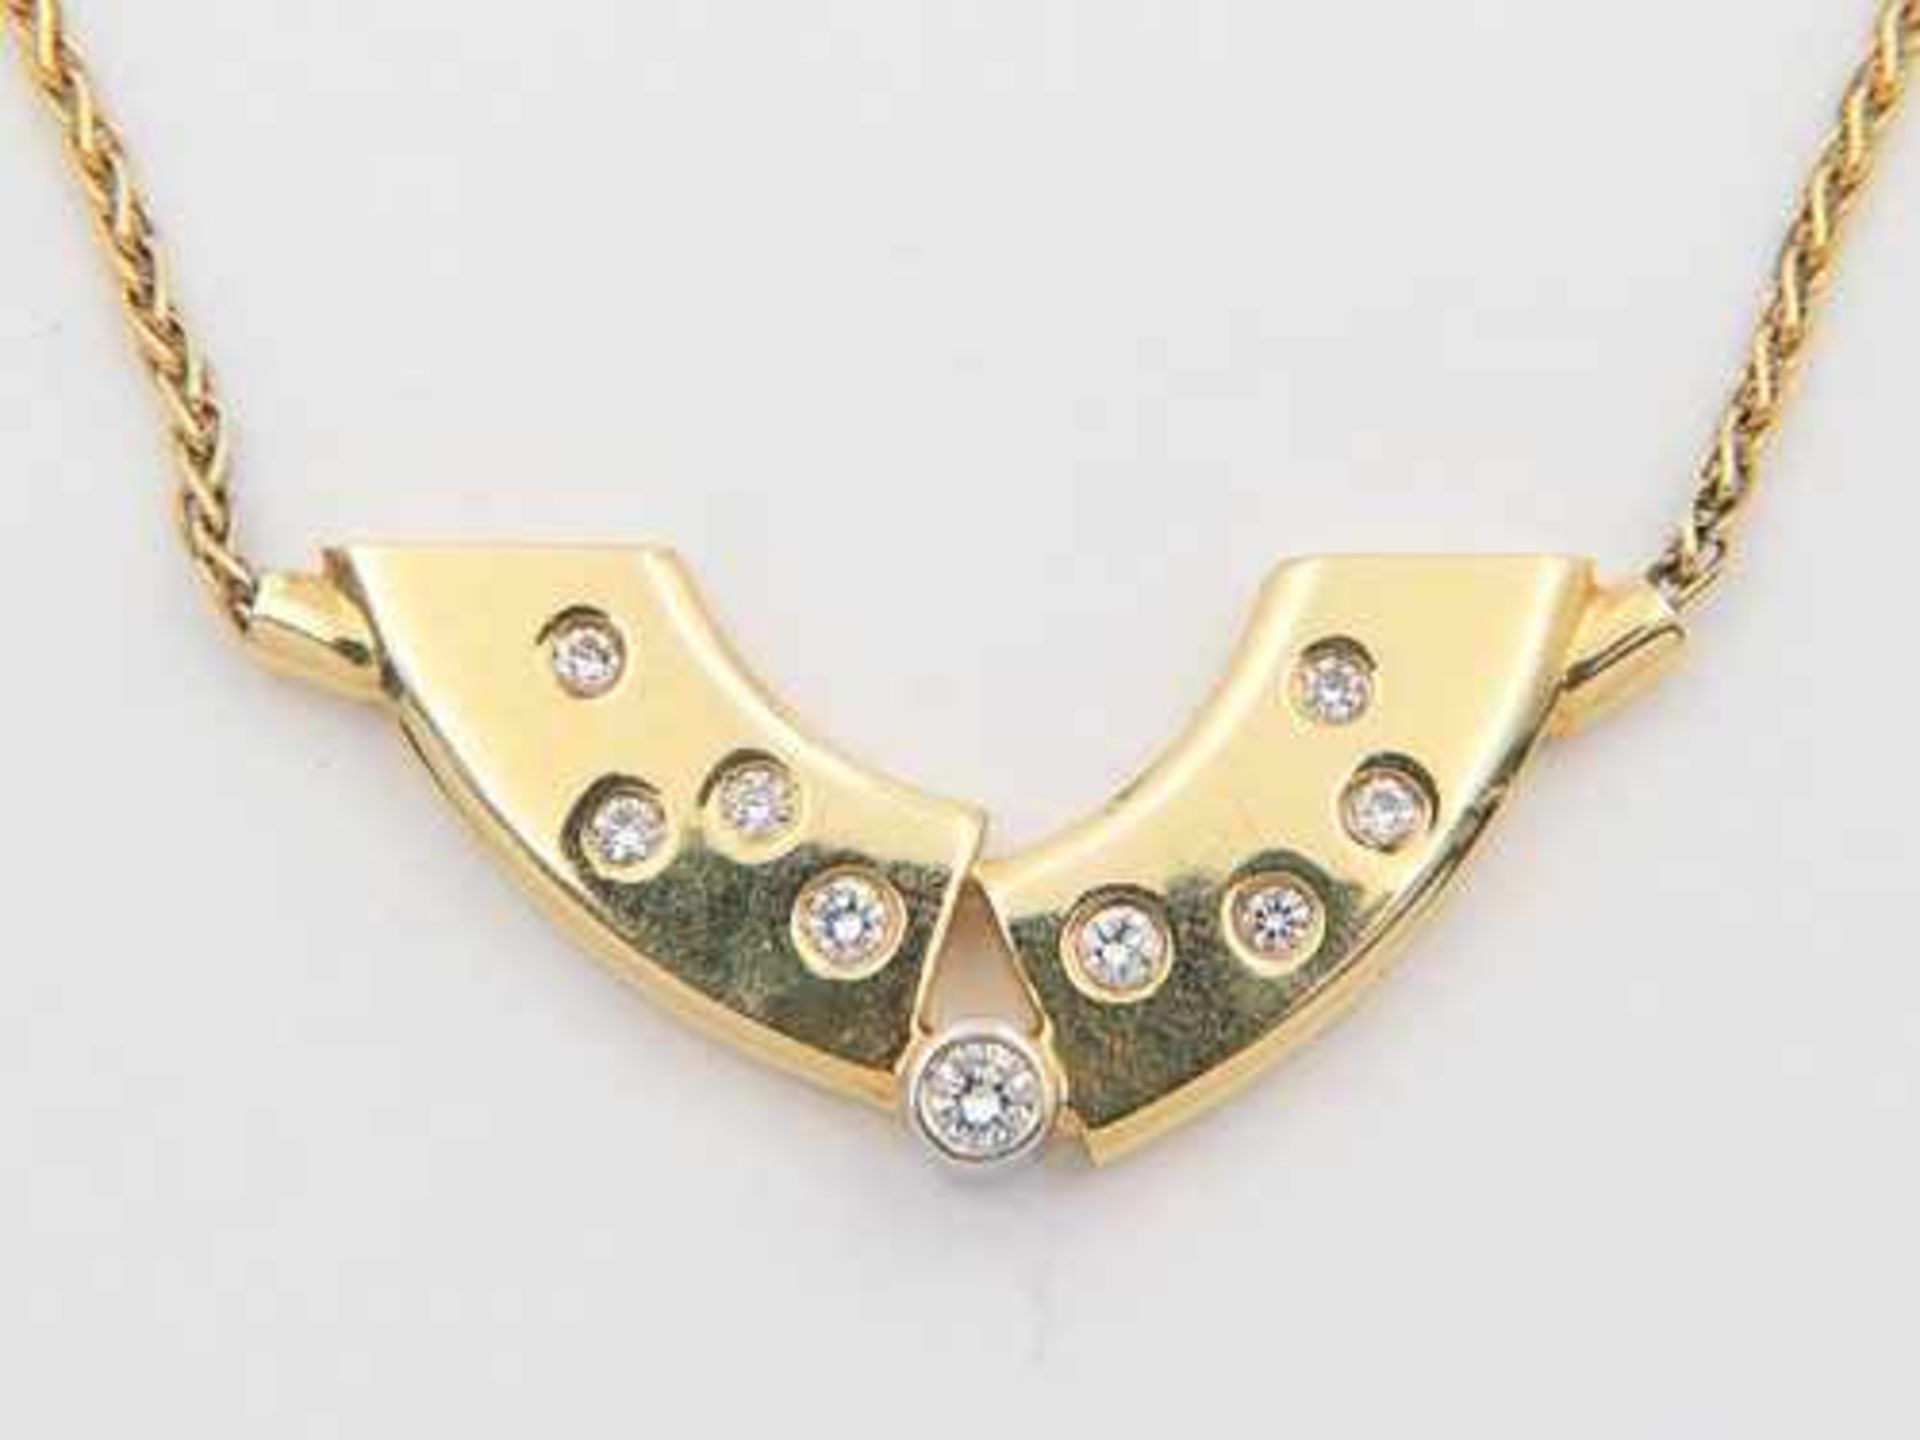 Diamant - Collier GG 750, sichelförmiges Mittelteil, durchbrochen ausgearbeitet, besetzt mit